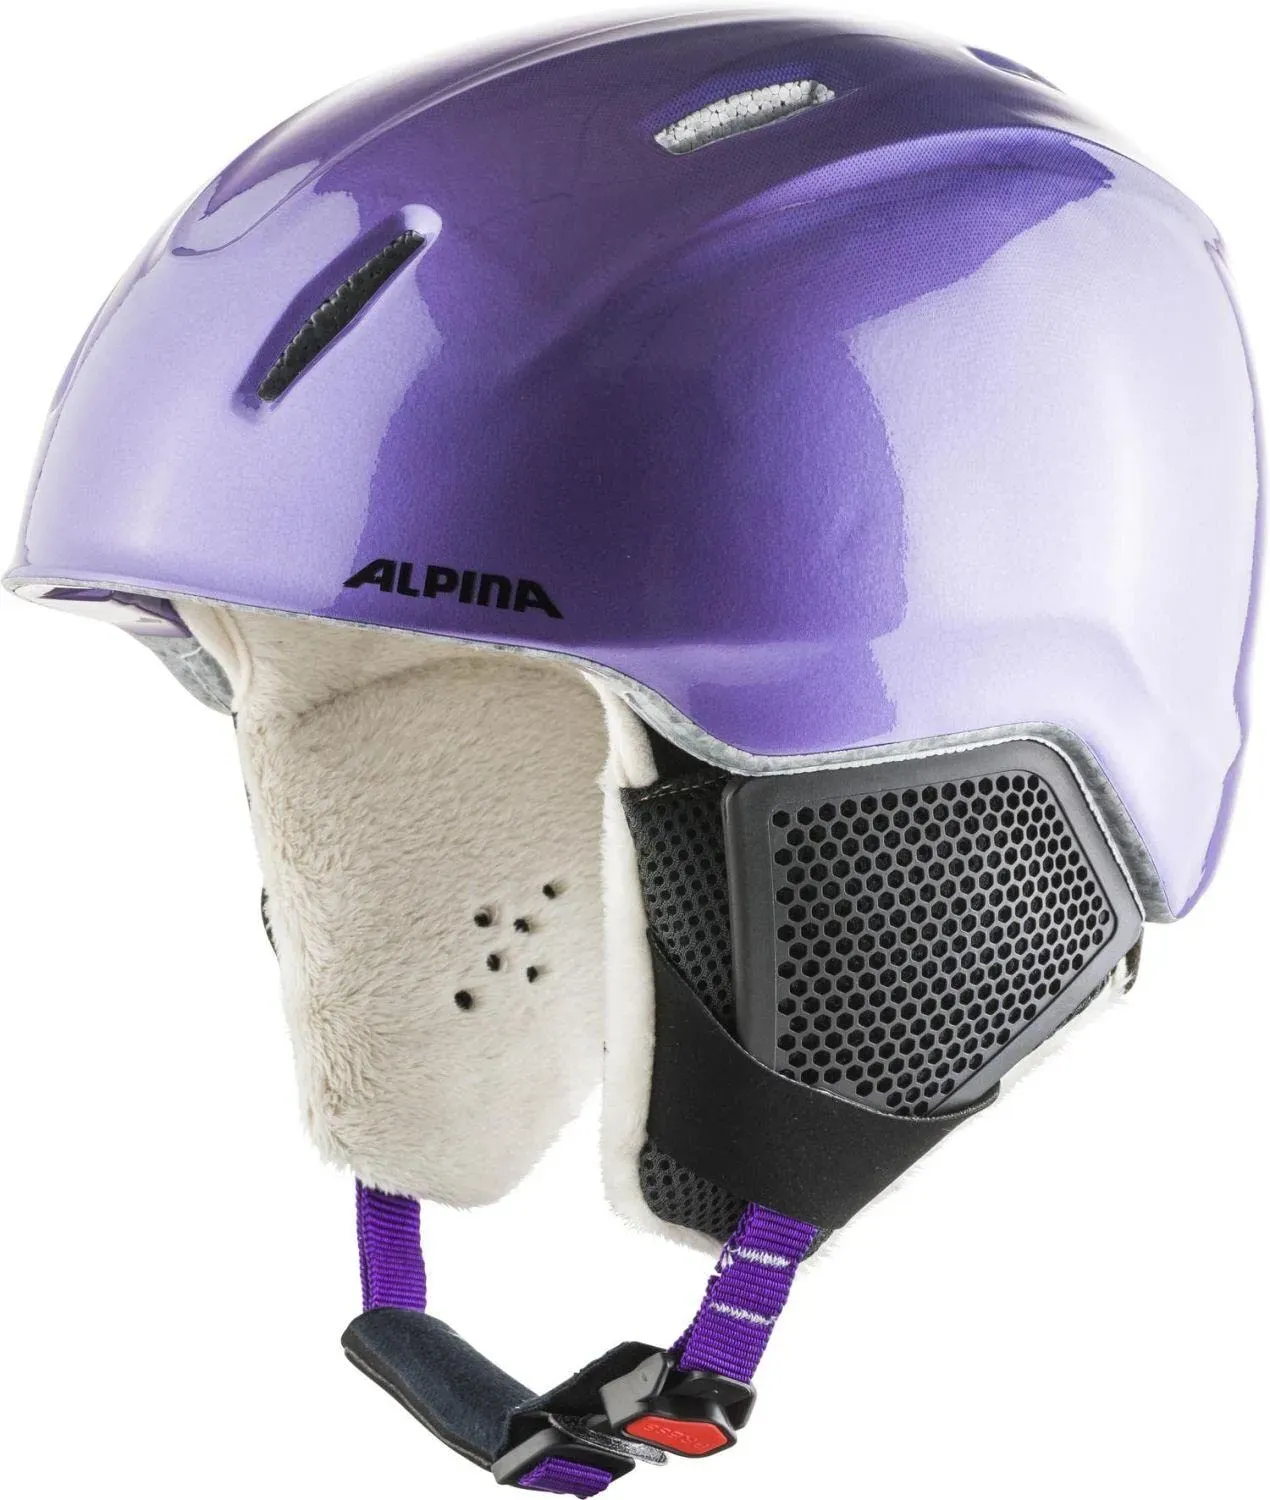 ALPINA CARAT LX - Sicherer, Bruchfester & Individuell Anpassbarer Skihelm Für Kinder, flip flop purple, 51-55 cm